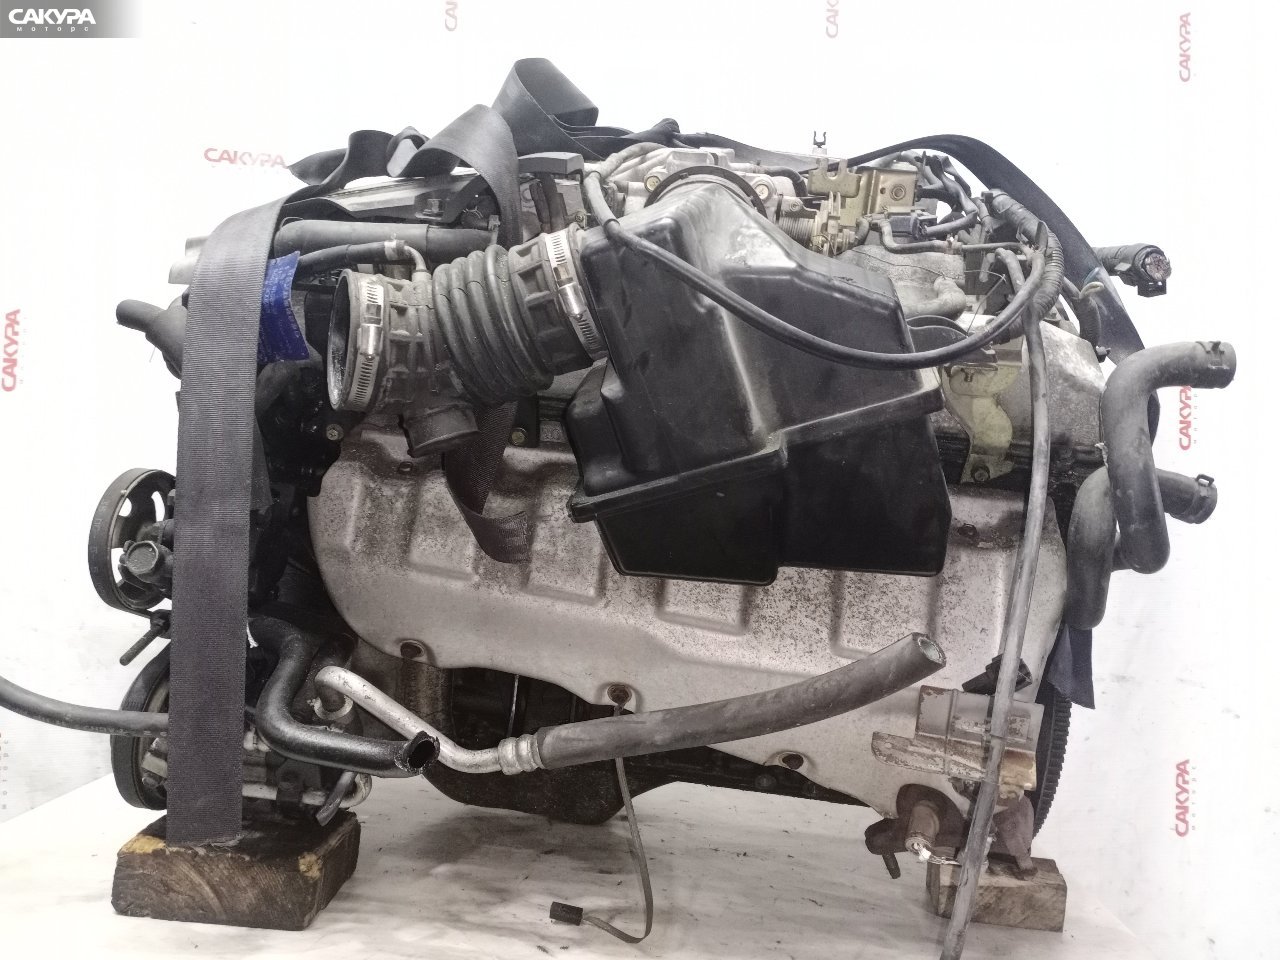 Двигатель Nissan Skyline HR34: купить в Сакура Красноярск.